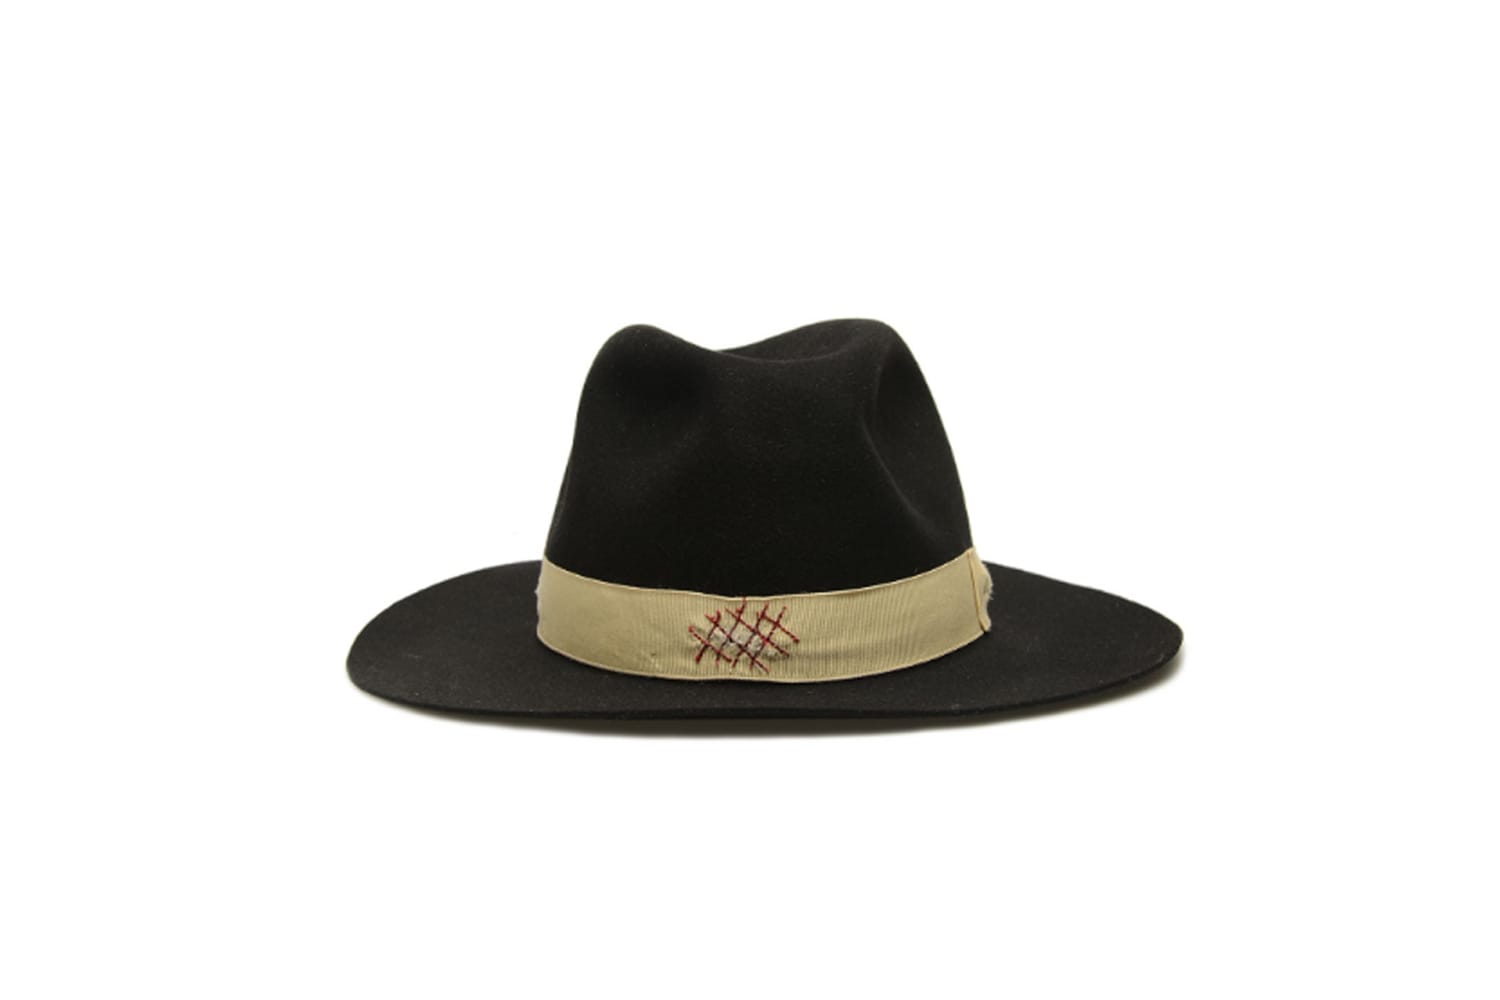 Ein Hut mit sehr breiter Krempe und hohem, eckigem Schaft, wie der handgefertigte Hut aus Biberfilz von Borsalino (um 739 Euro über Verypoolisih) streckt runde Gesichter.